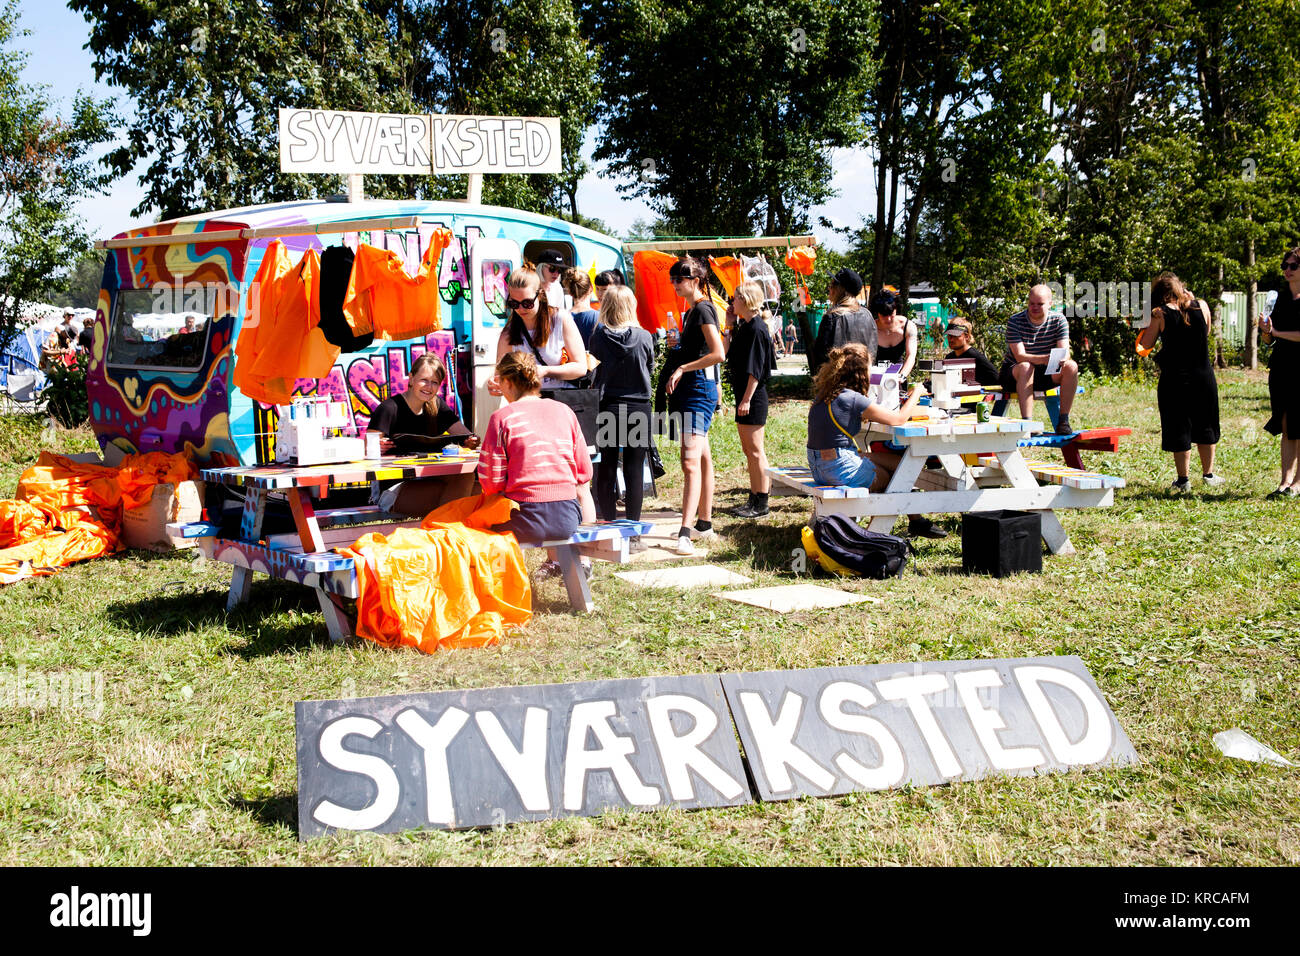 En el Festival de Roskilde zona de acampada de muchas actividades están ocurriendo como aquí donde algunos invitados del festival han creado un taller de costura para los interesados. Dinamarca 30/06 2014. Foto de stock